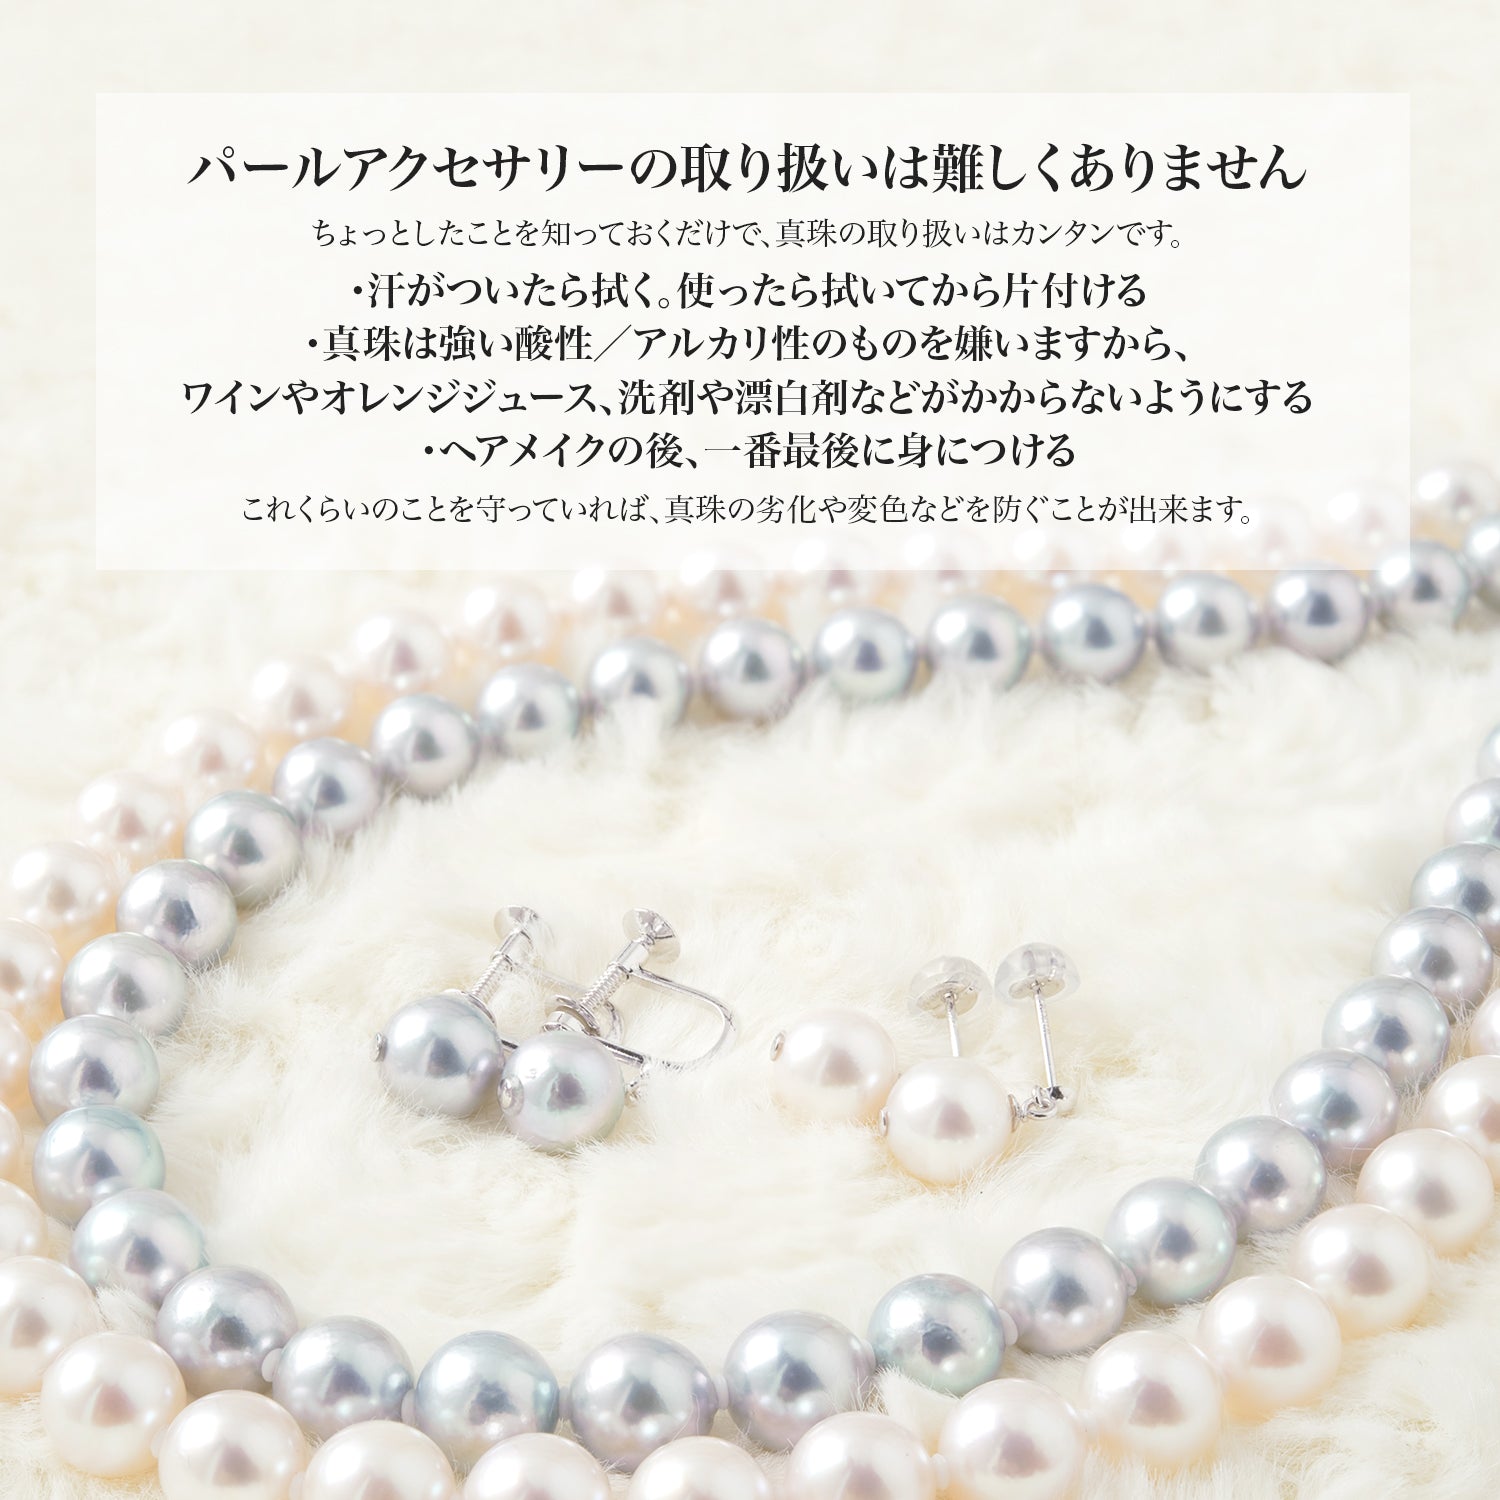 [灰色] Akoya 珍珠正装项链 2 件套 [8.0-8.5mm] 耳环/礼仪场合耳环 附真品证书和收纳盒 [数量有限]